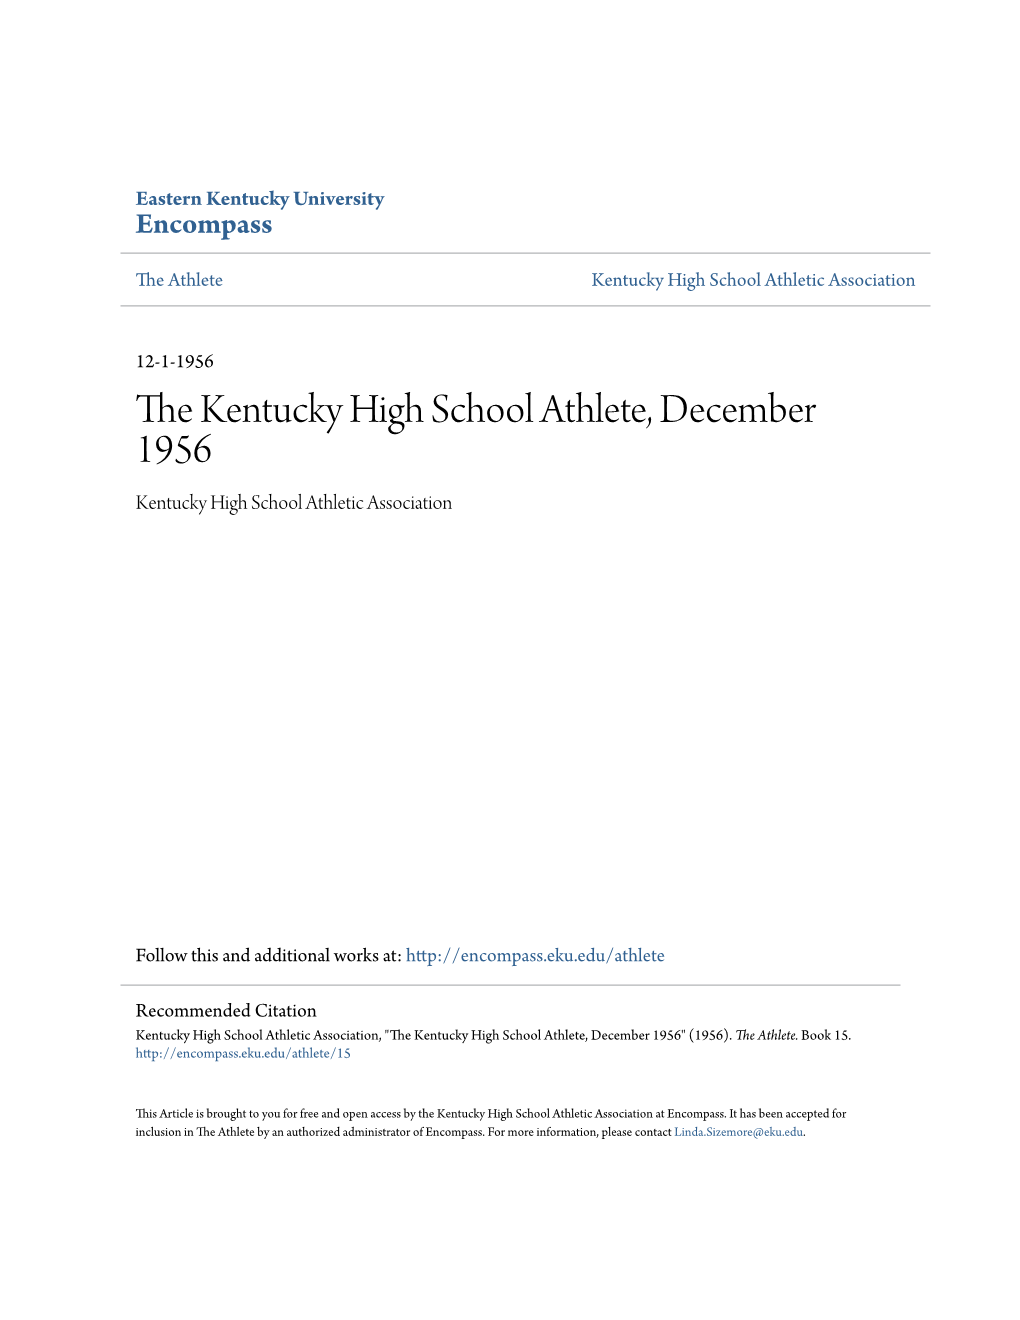 The Kentucky High School Athlete, December 1956 Kentucky High School Athletic Association